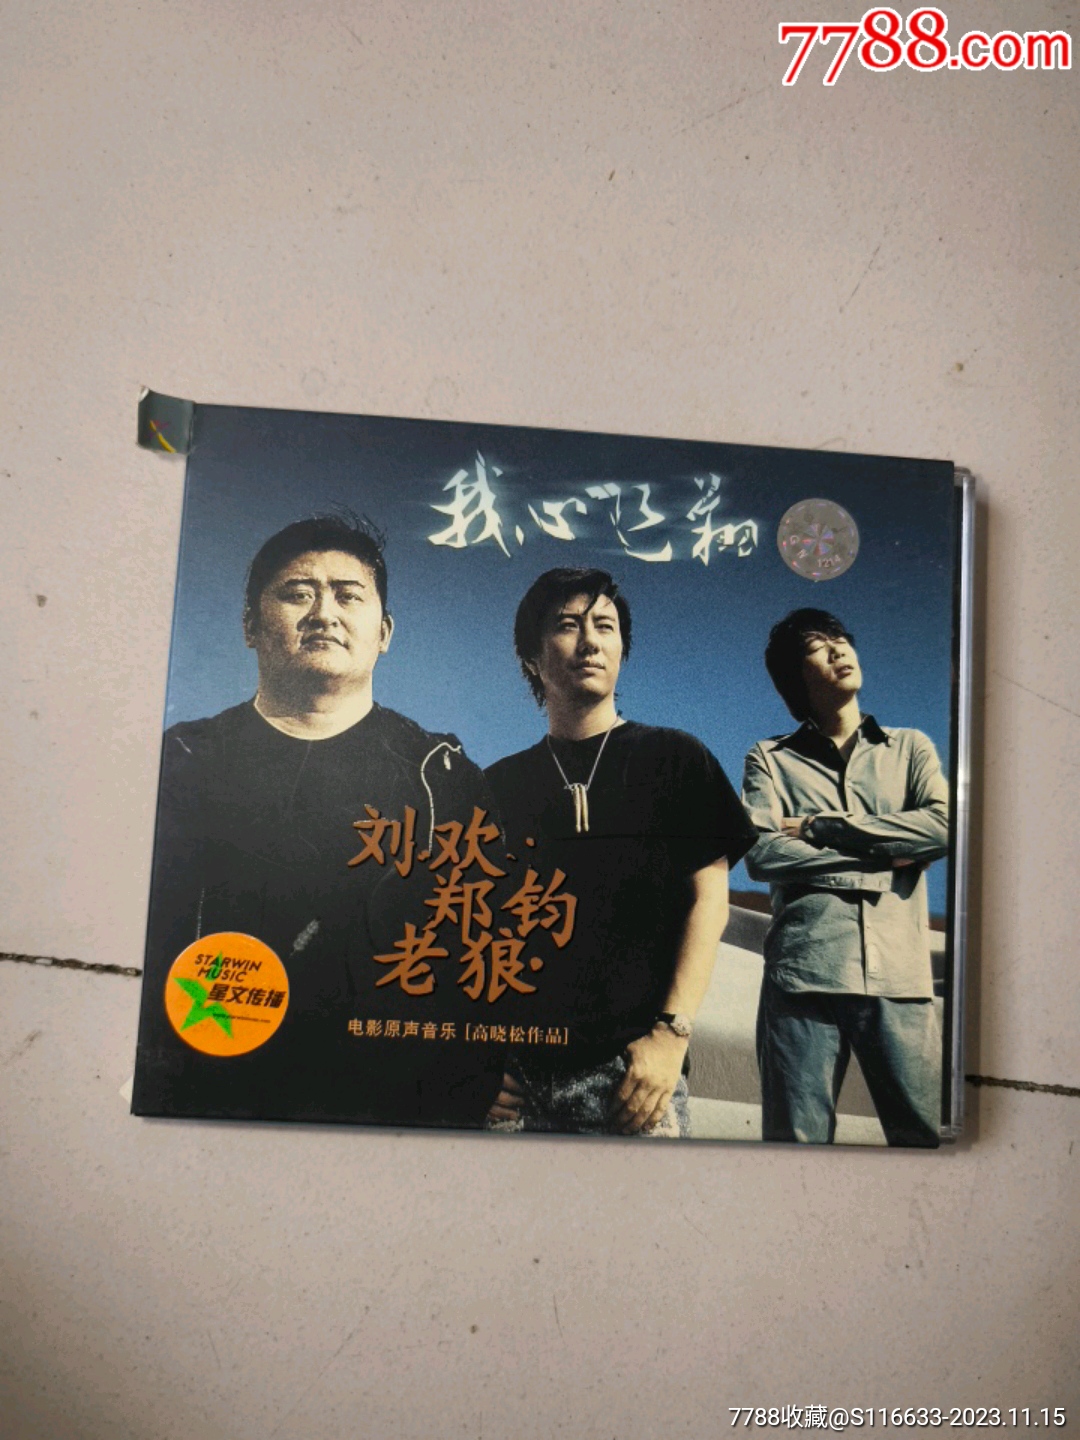 我心飞翔电影原声音乐刘欢郑钧老狼高晓松作品专辑cd